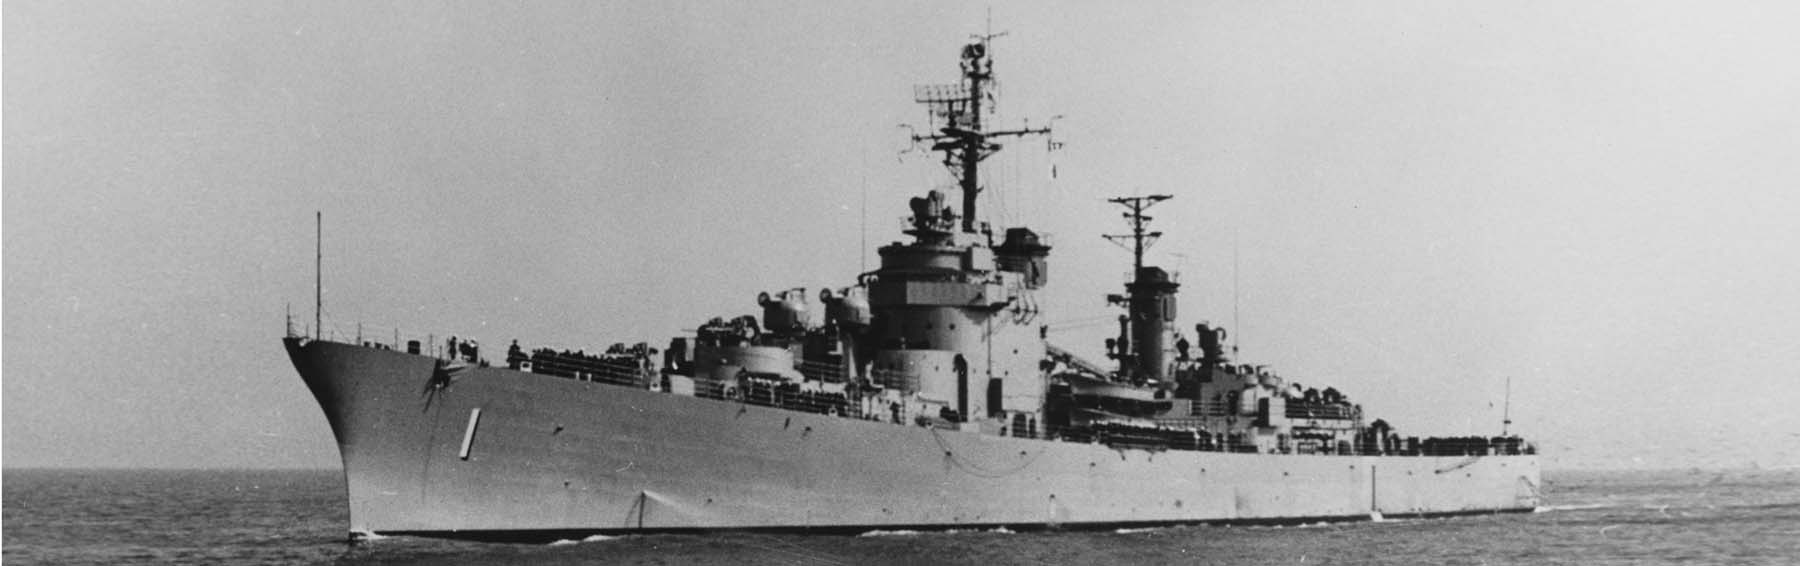 USS Norfolk underway